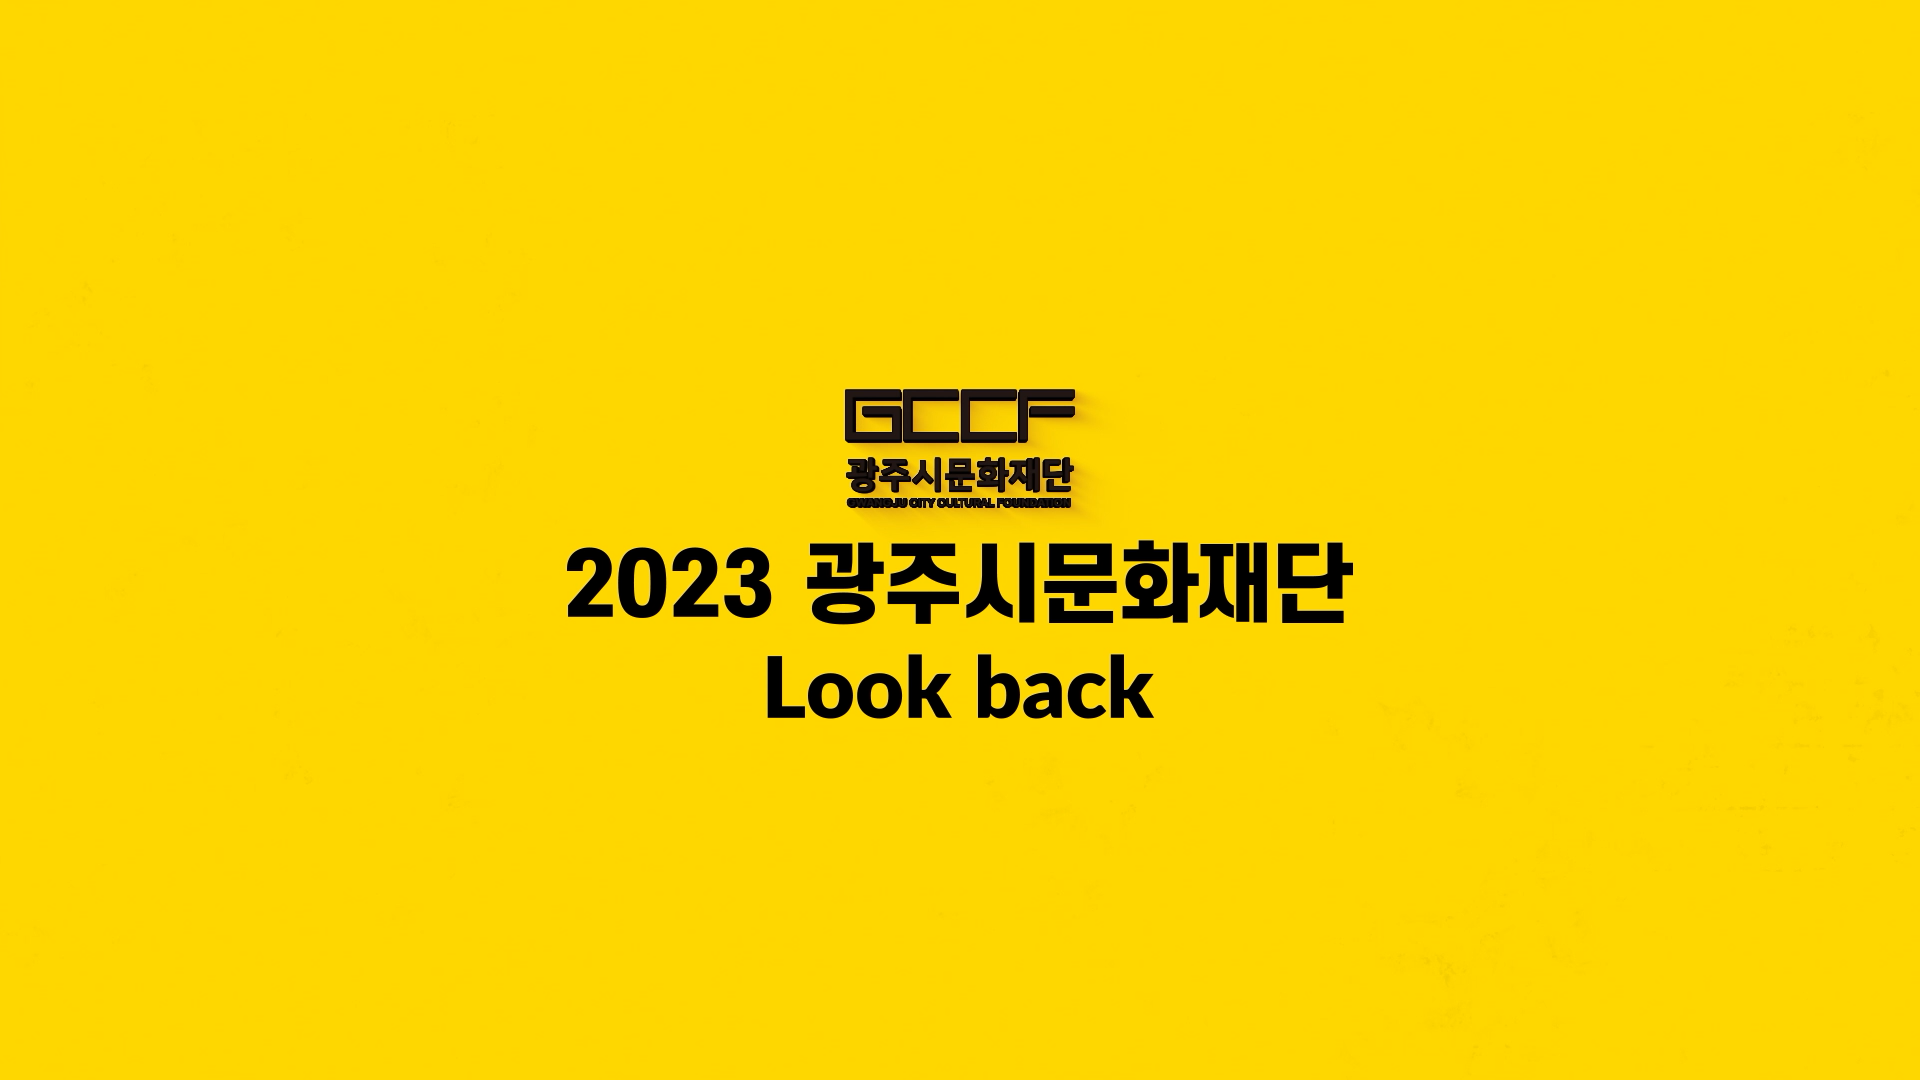 2023년 광주시문화재단 돌아보기
